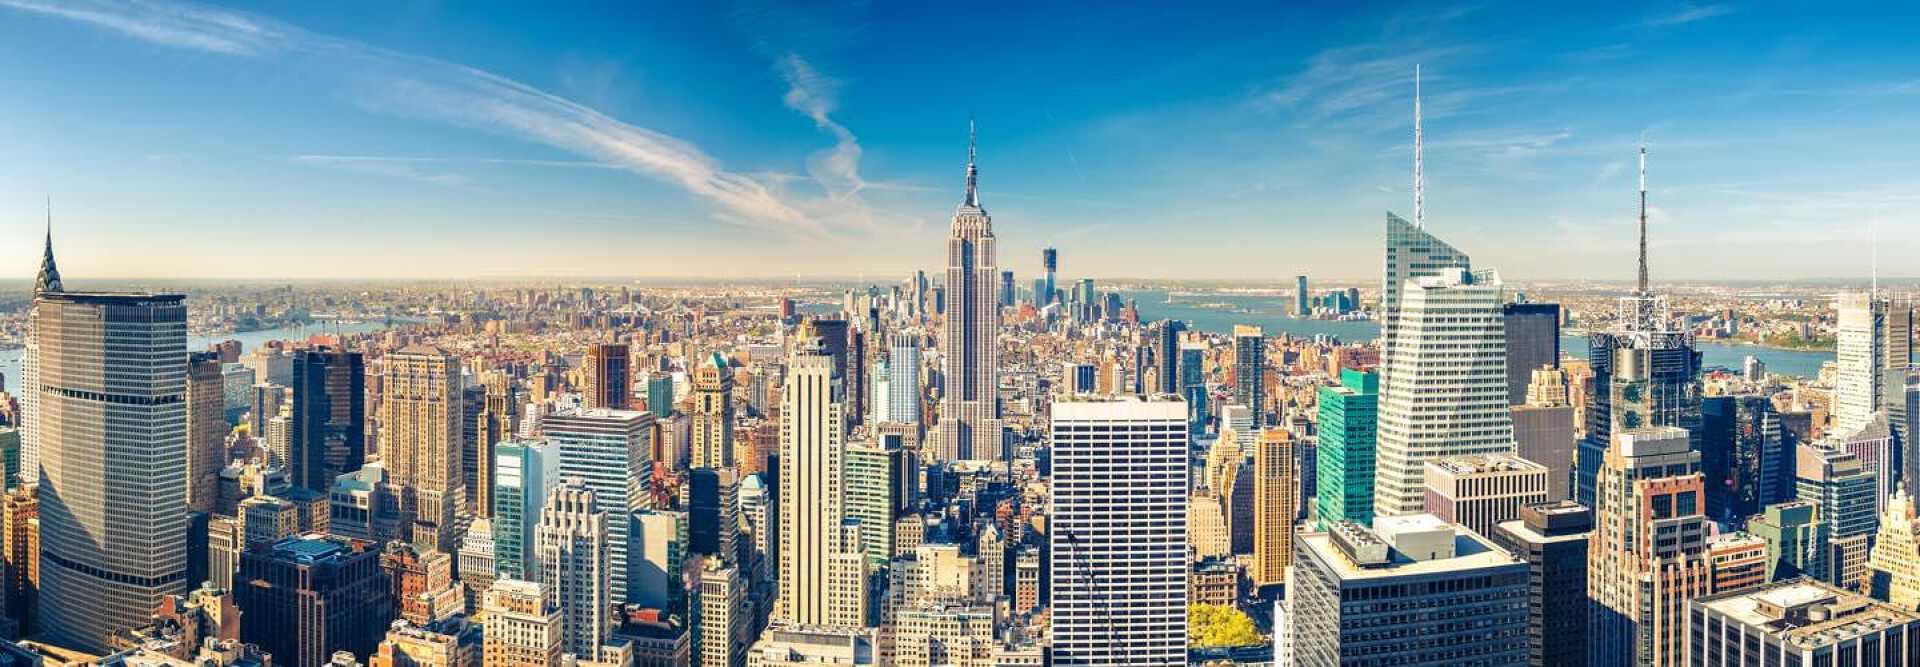 Vue aérienne de New York et ses gratte-ciels avec l'Empire State Building